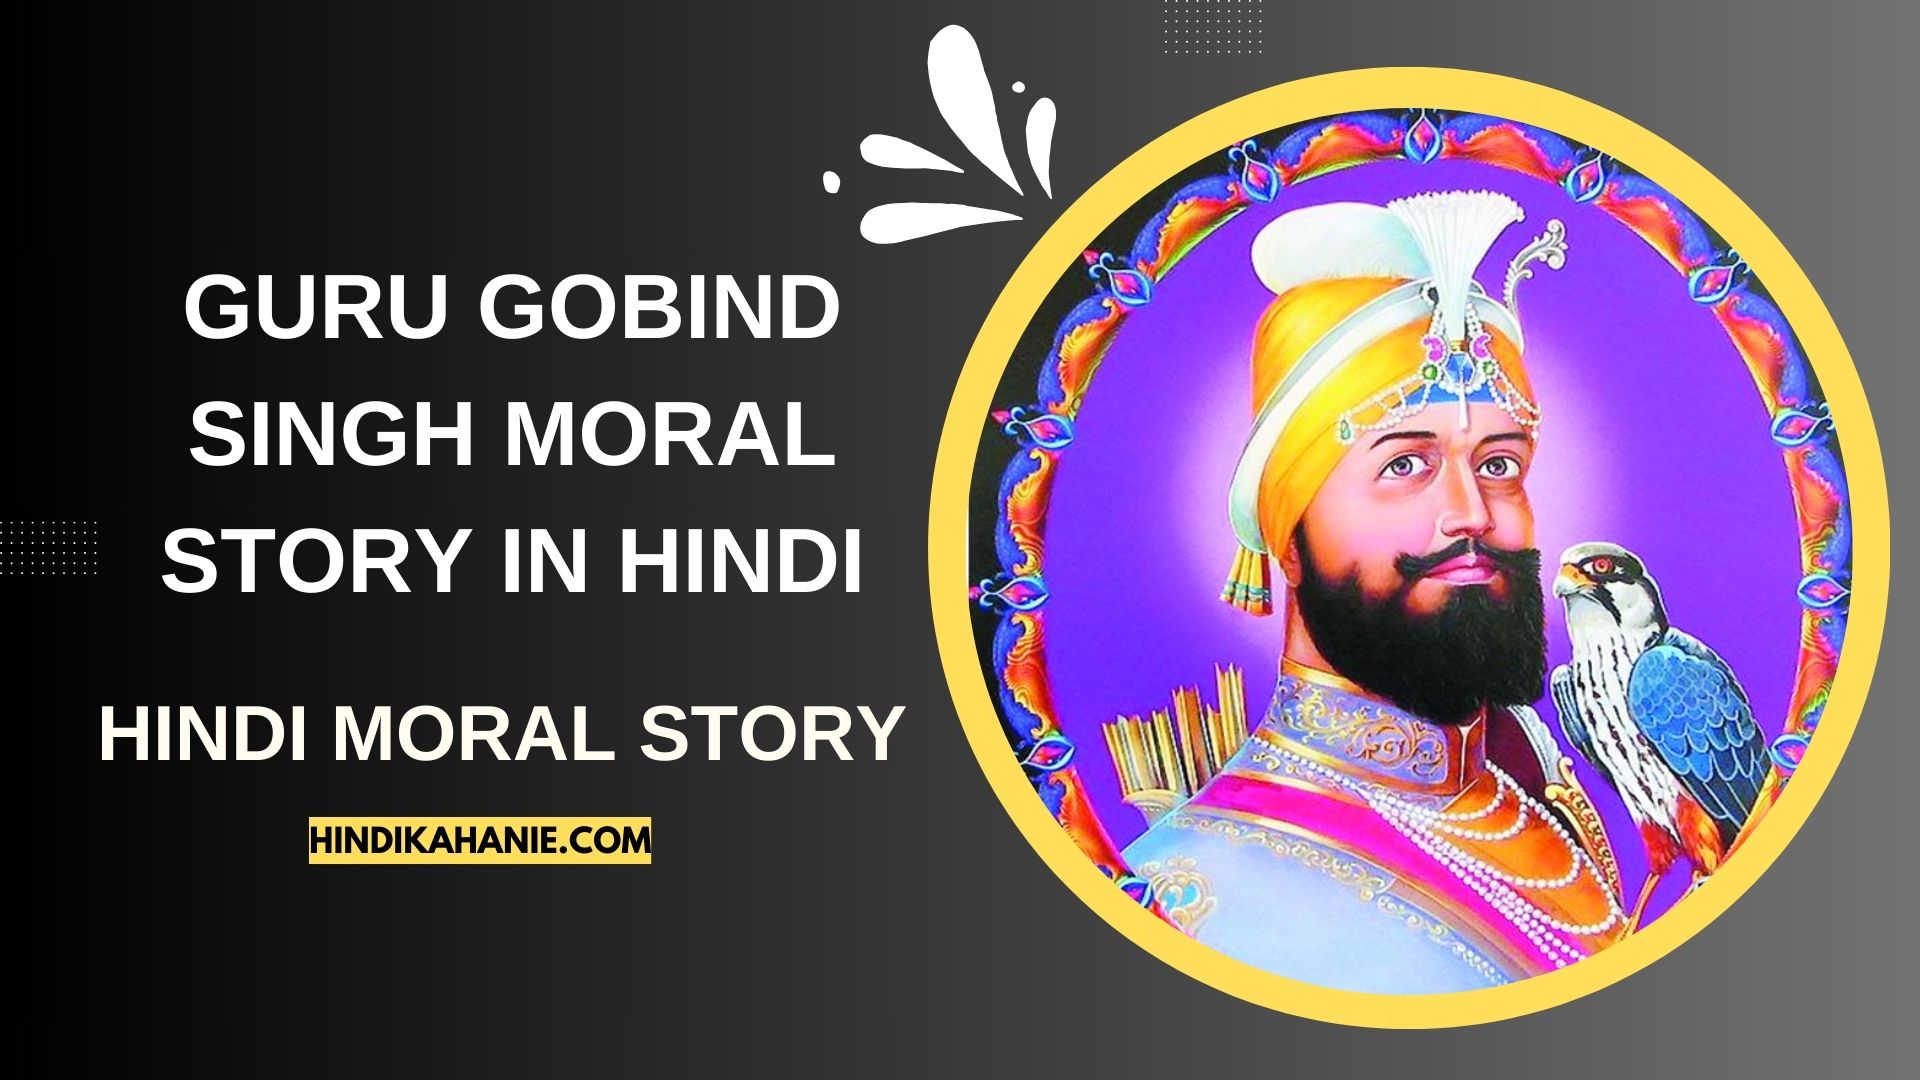 Guru Gobind Singh Moral Story in Hindi